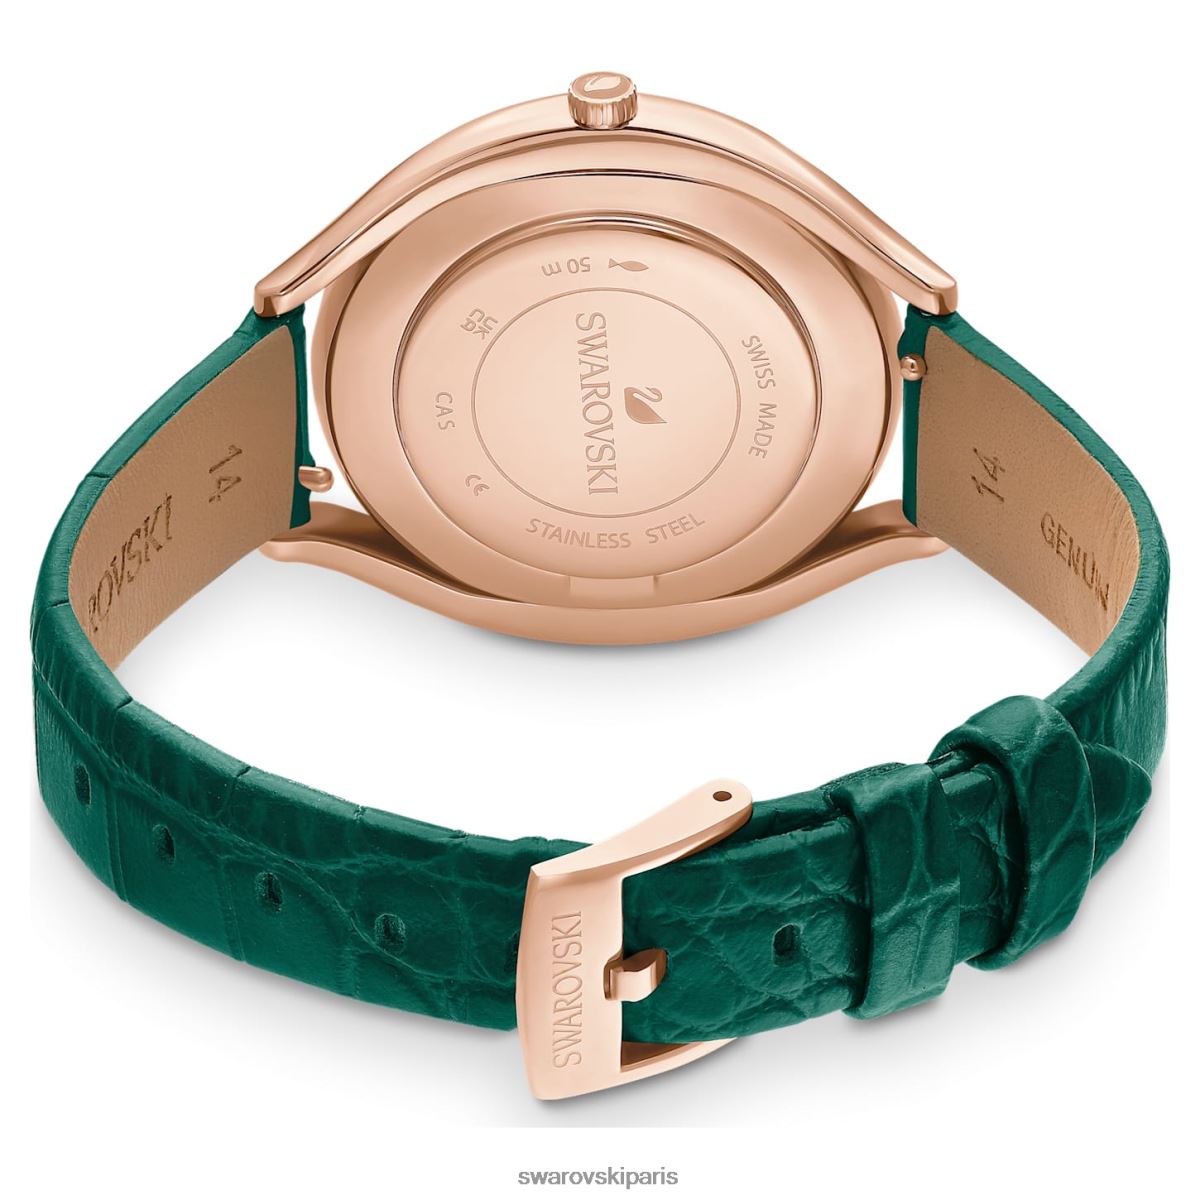 accessoires Swarovski montre aura cristalline fabrication suisse, bracelet en cuir, vert, finition doré rose RZD0XJ1155